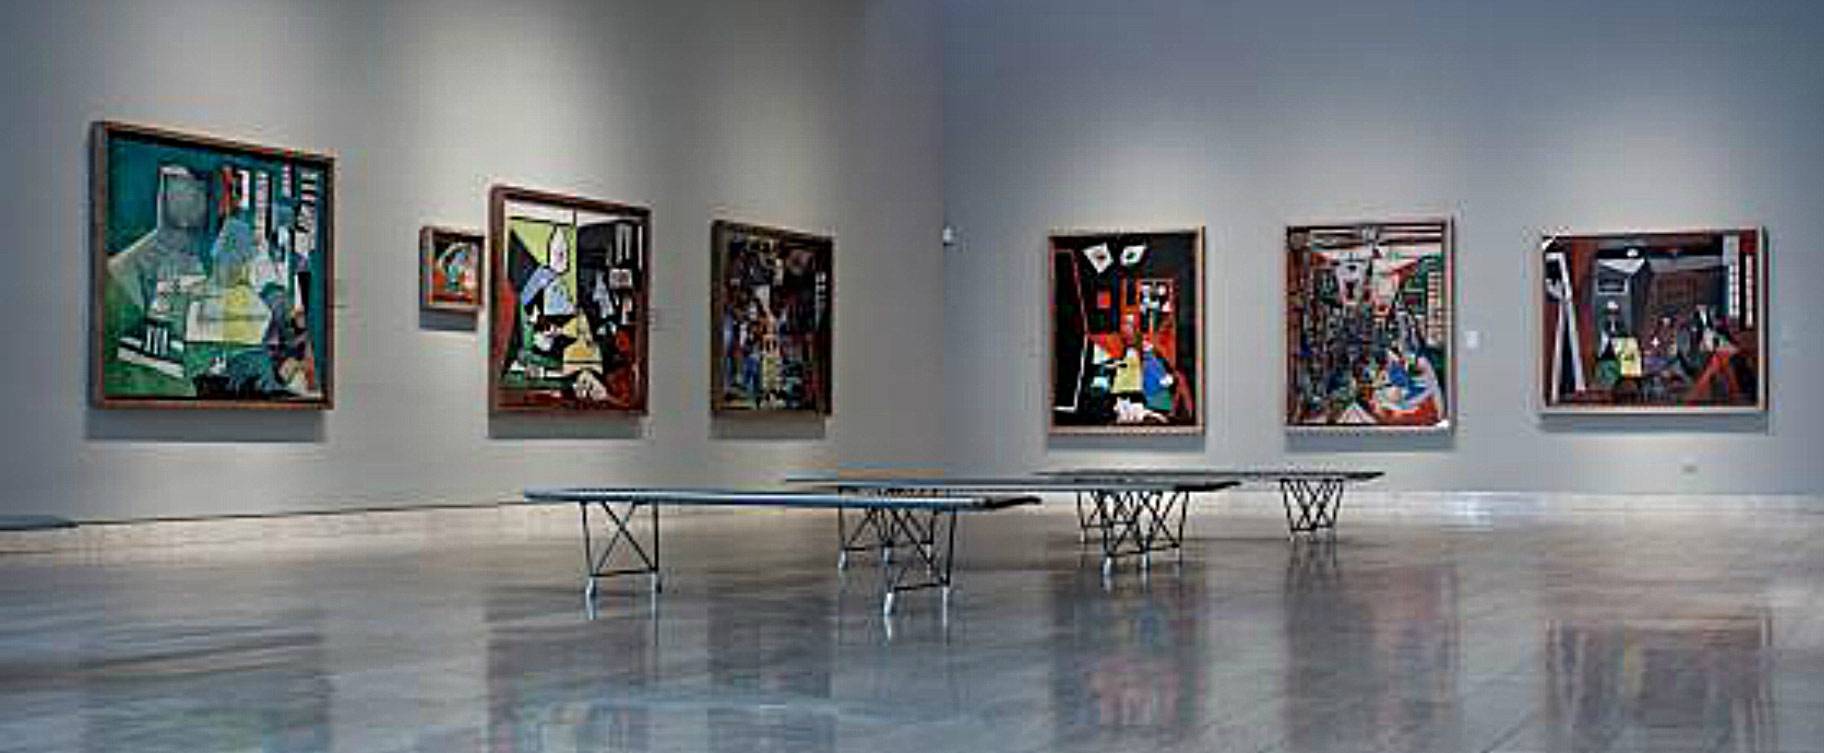 Музей пикассо в барселоне – место, где должен побывать каждый ценитель искусства